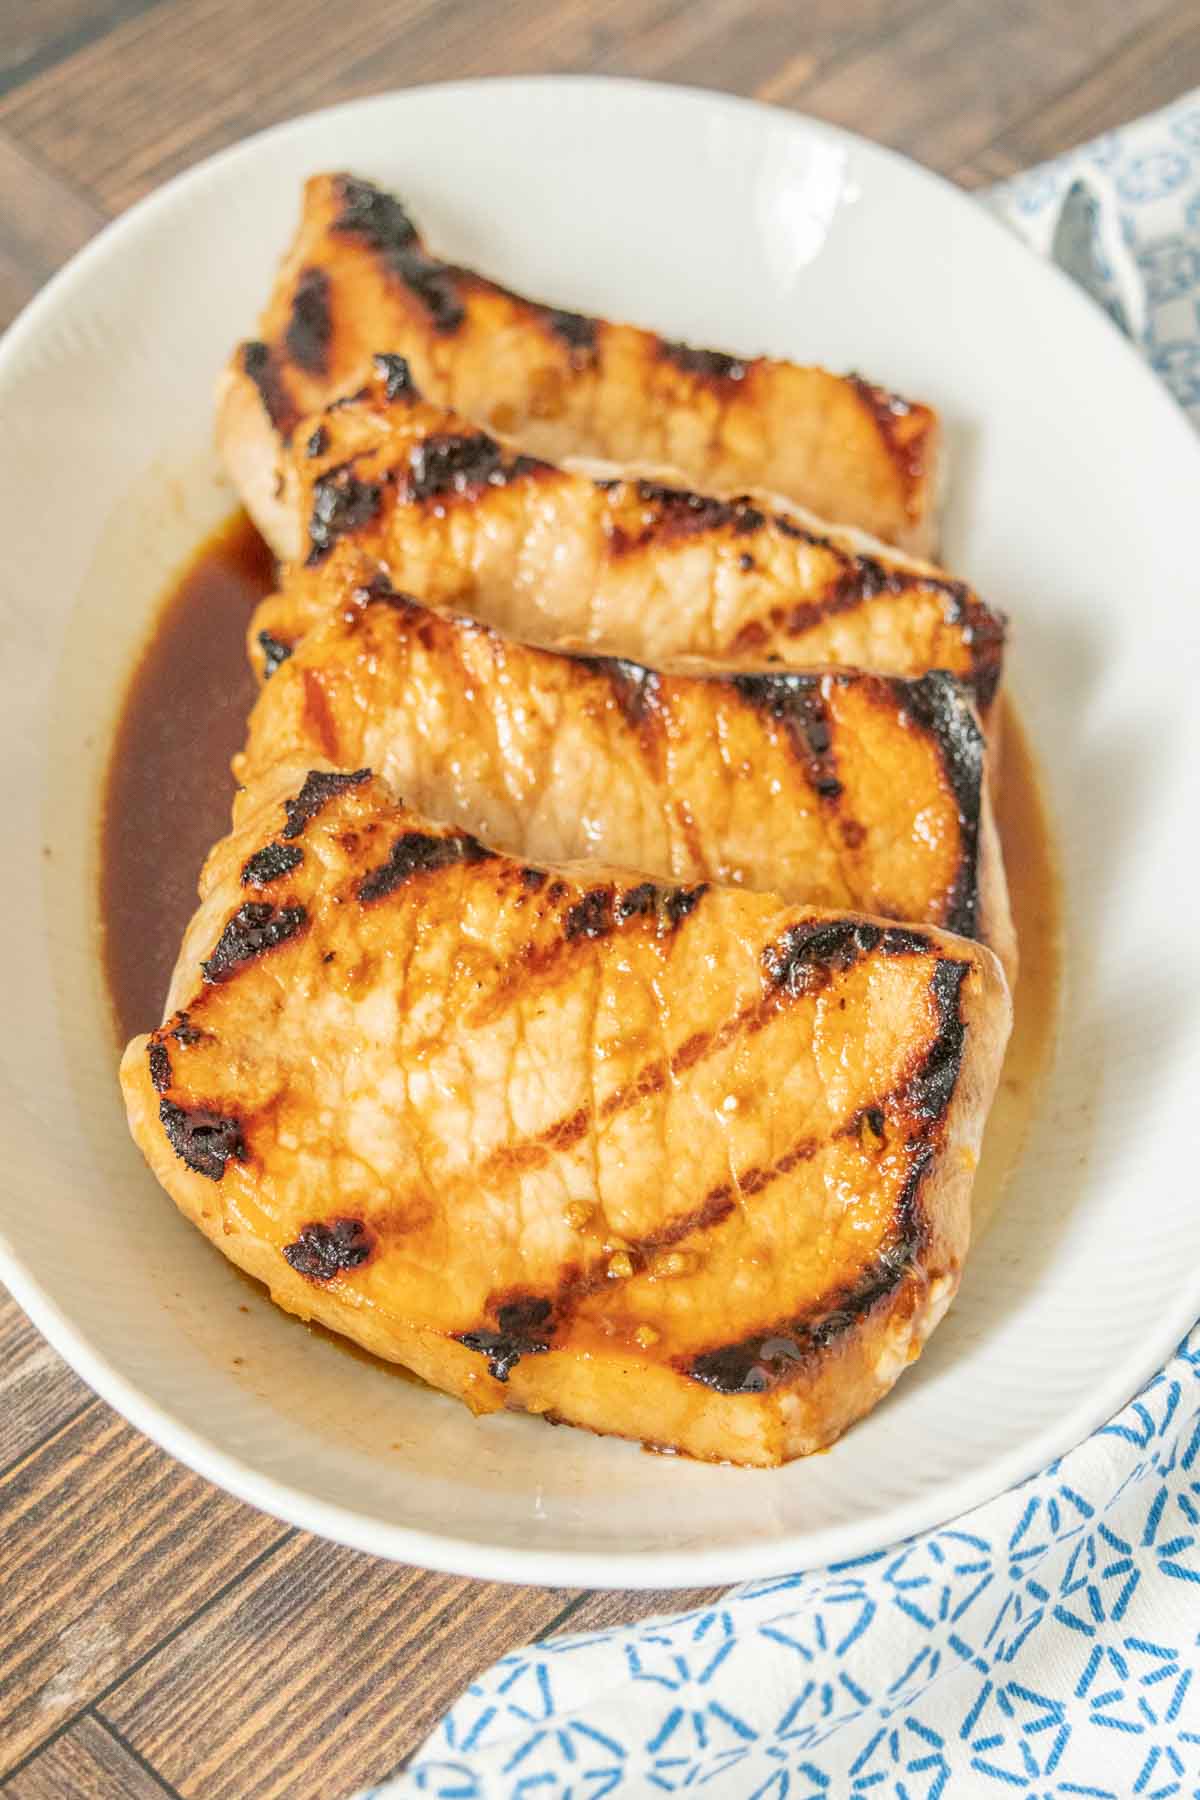 Platter of teriyaki pork chops.